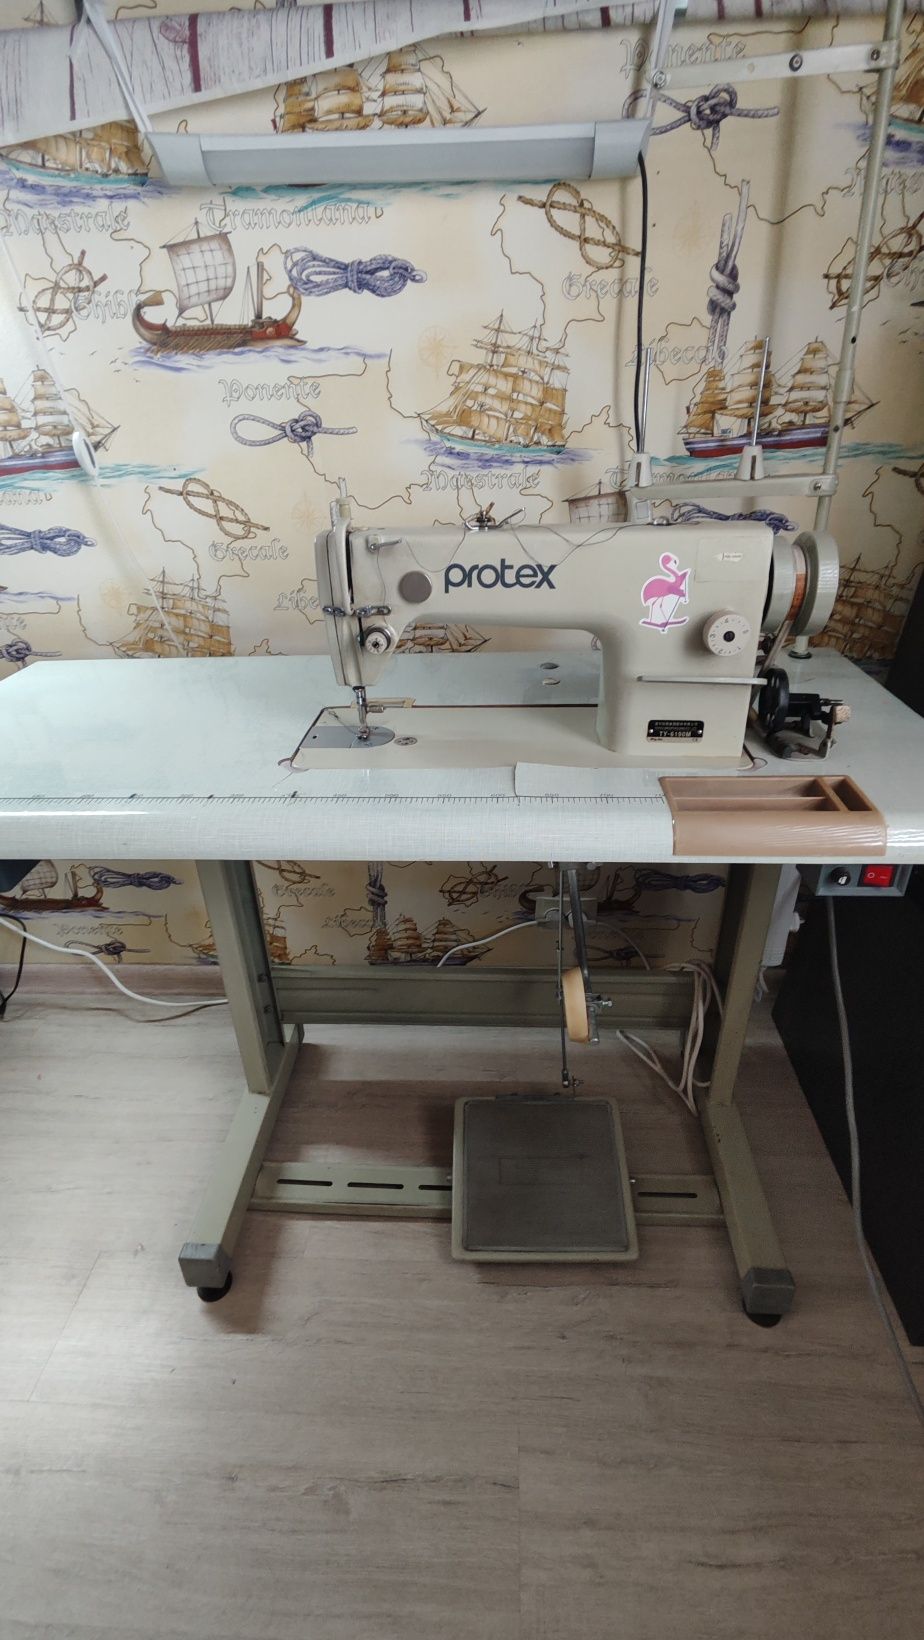 Промышленная швейная машина Protex TY-6190M